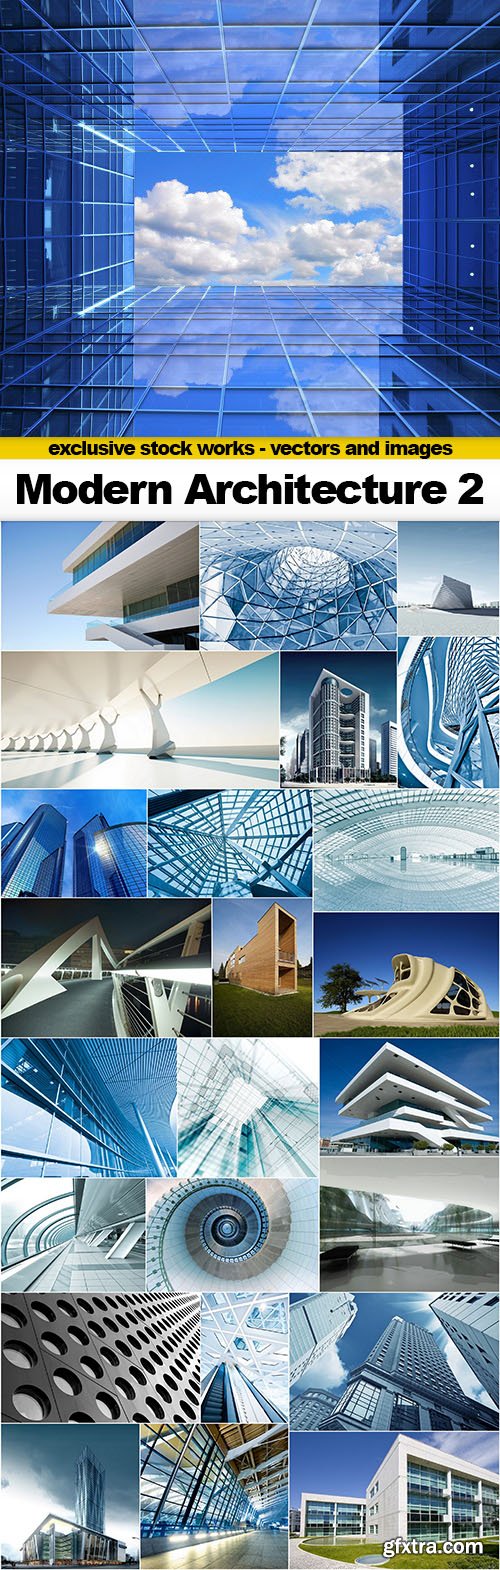 Modern Architecture 2 - 25x UHQ JPEG